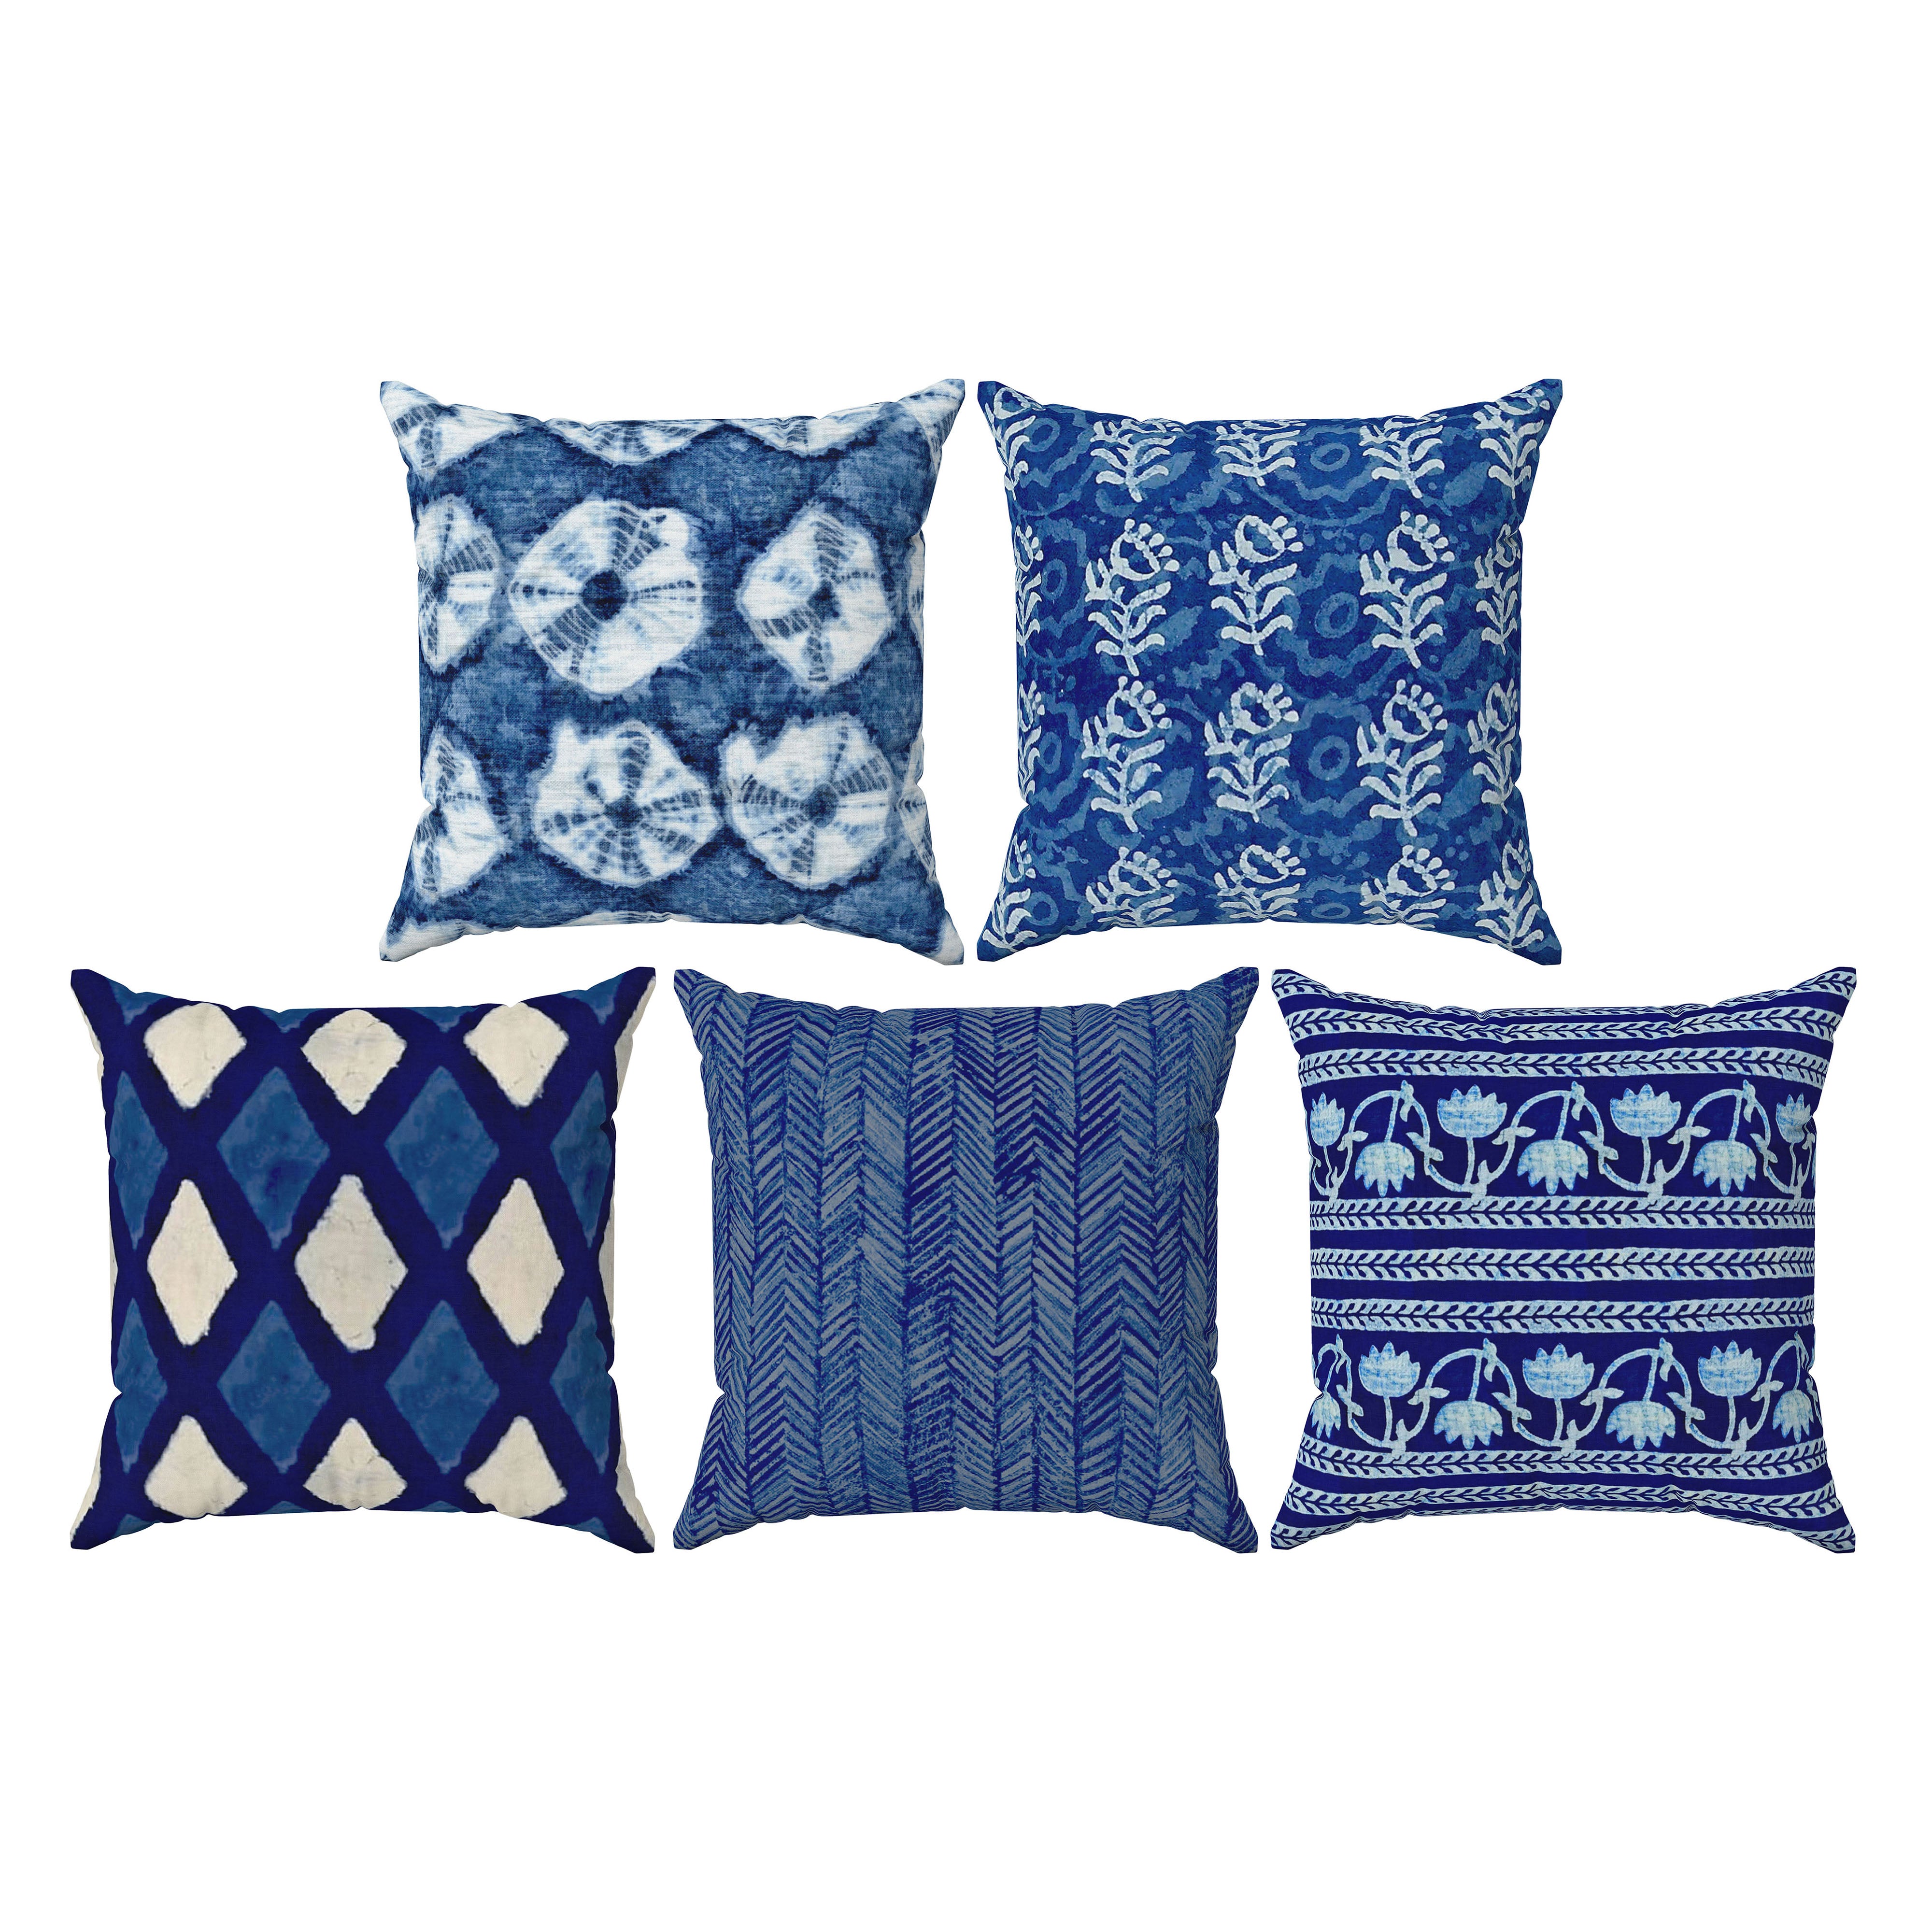 Indigo Set of 5 Cushions